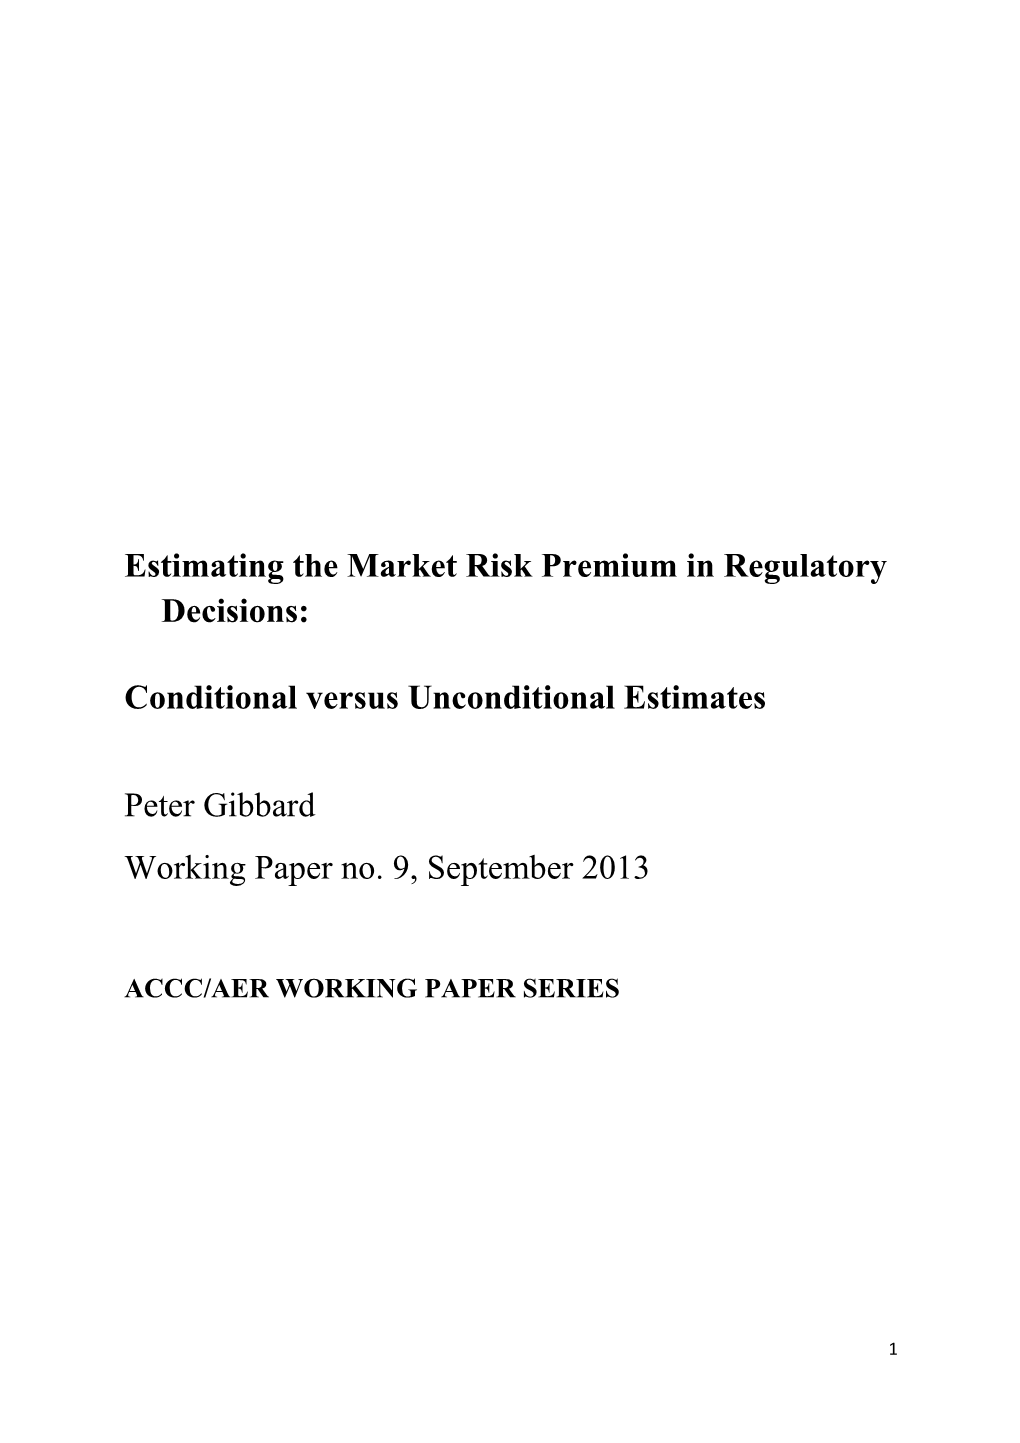 Estimating the Market Risk Premium in Regulatory Decisions